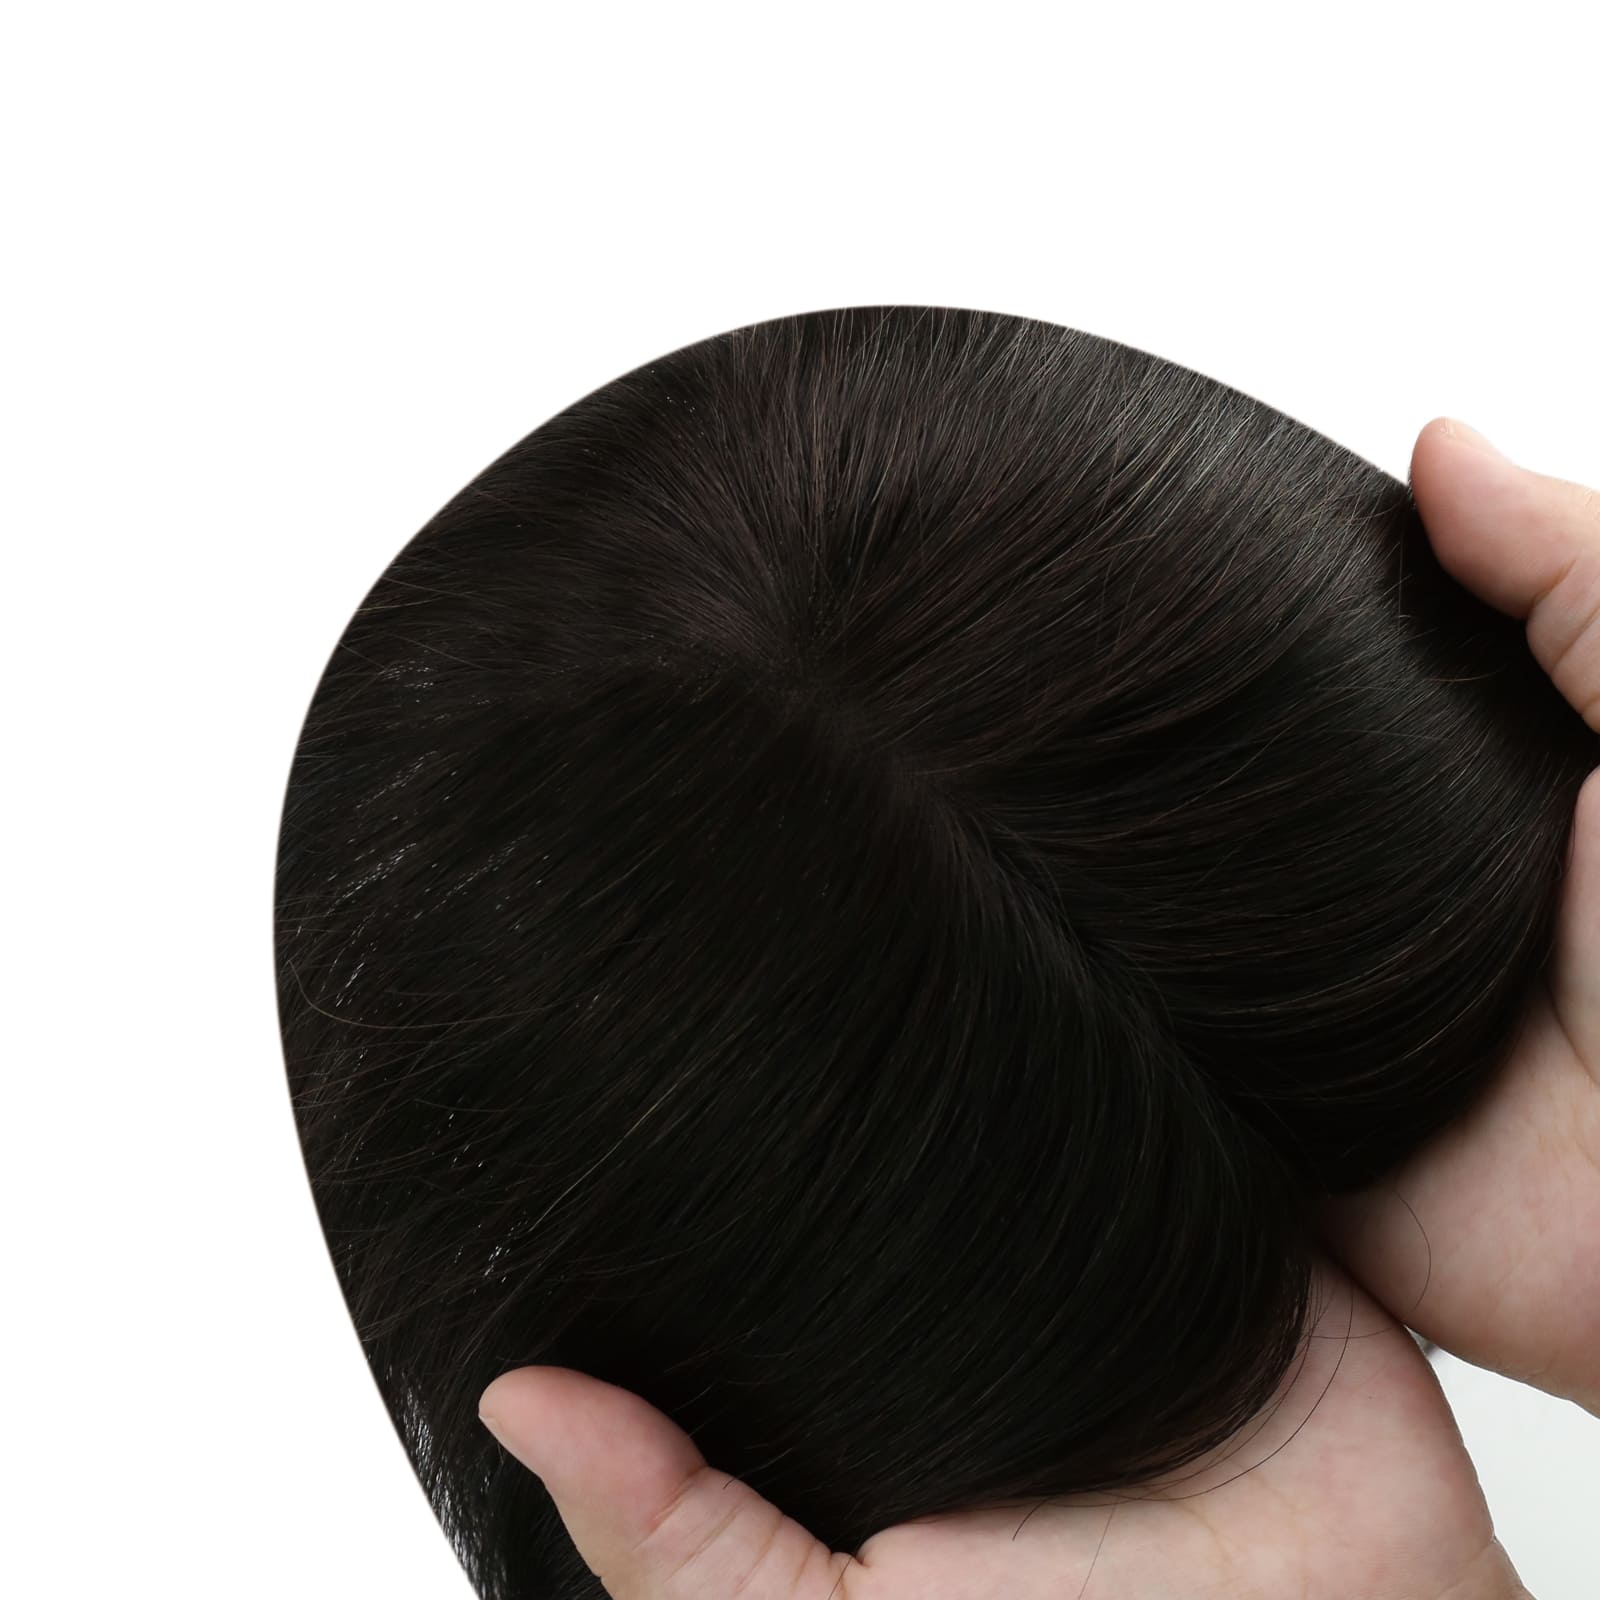 hair topper for thinning hair virgin hair human hair hair toppers for women